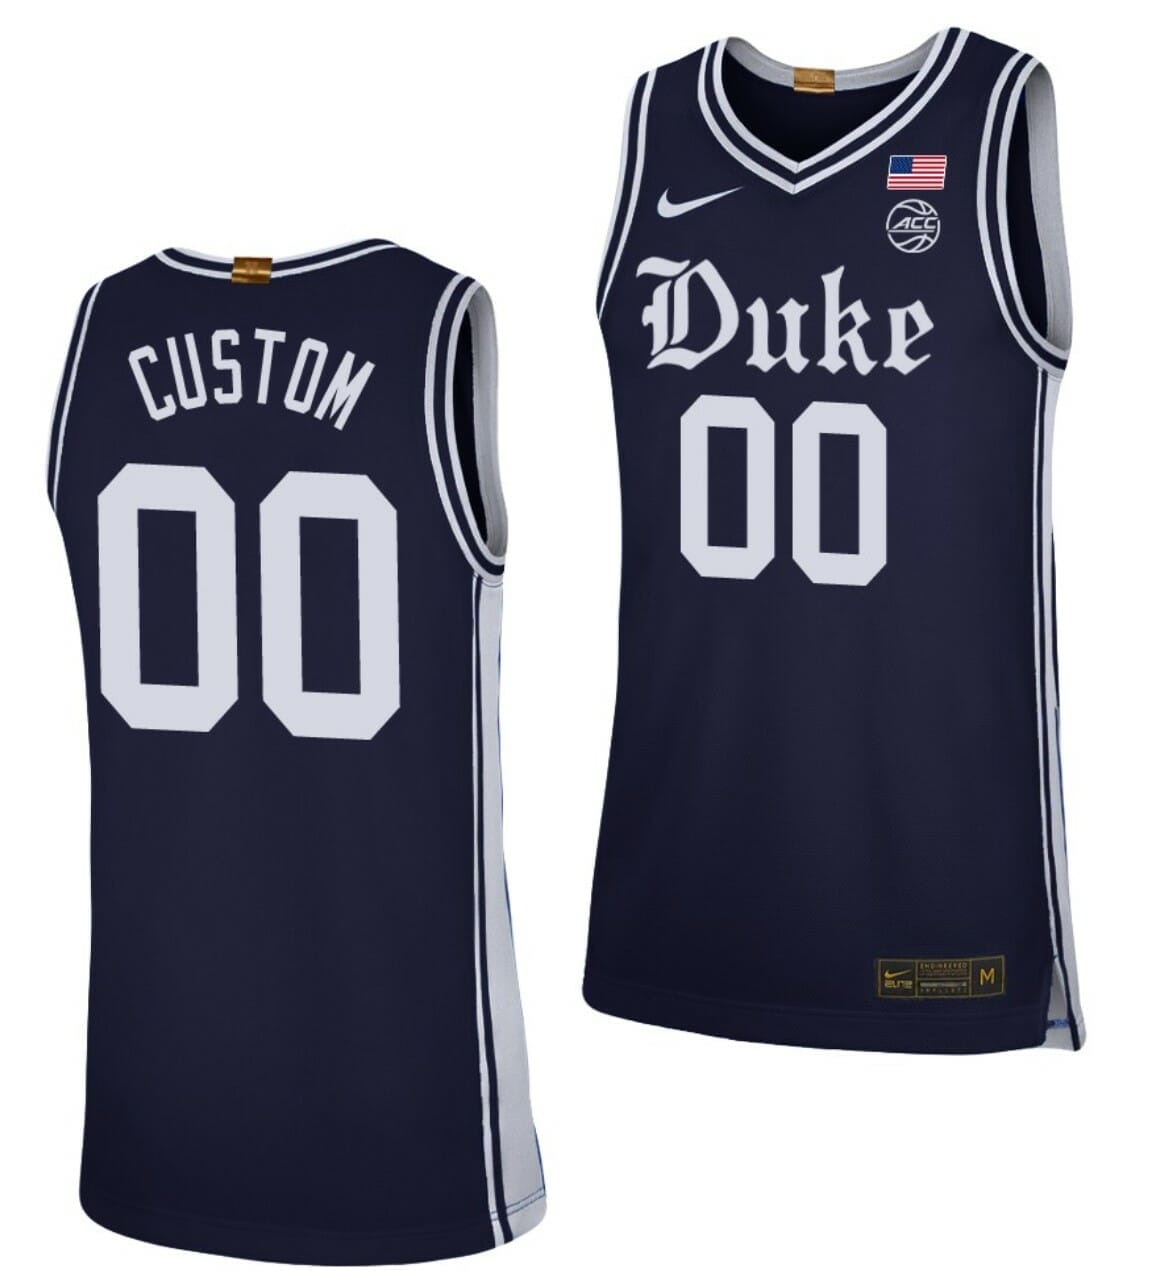 Available] Buy New Custom Duke Blue Devils Jersey Navy